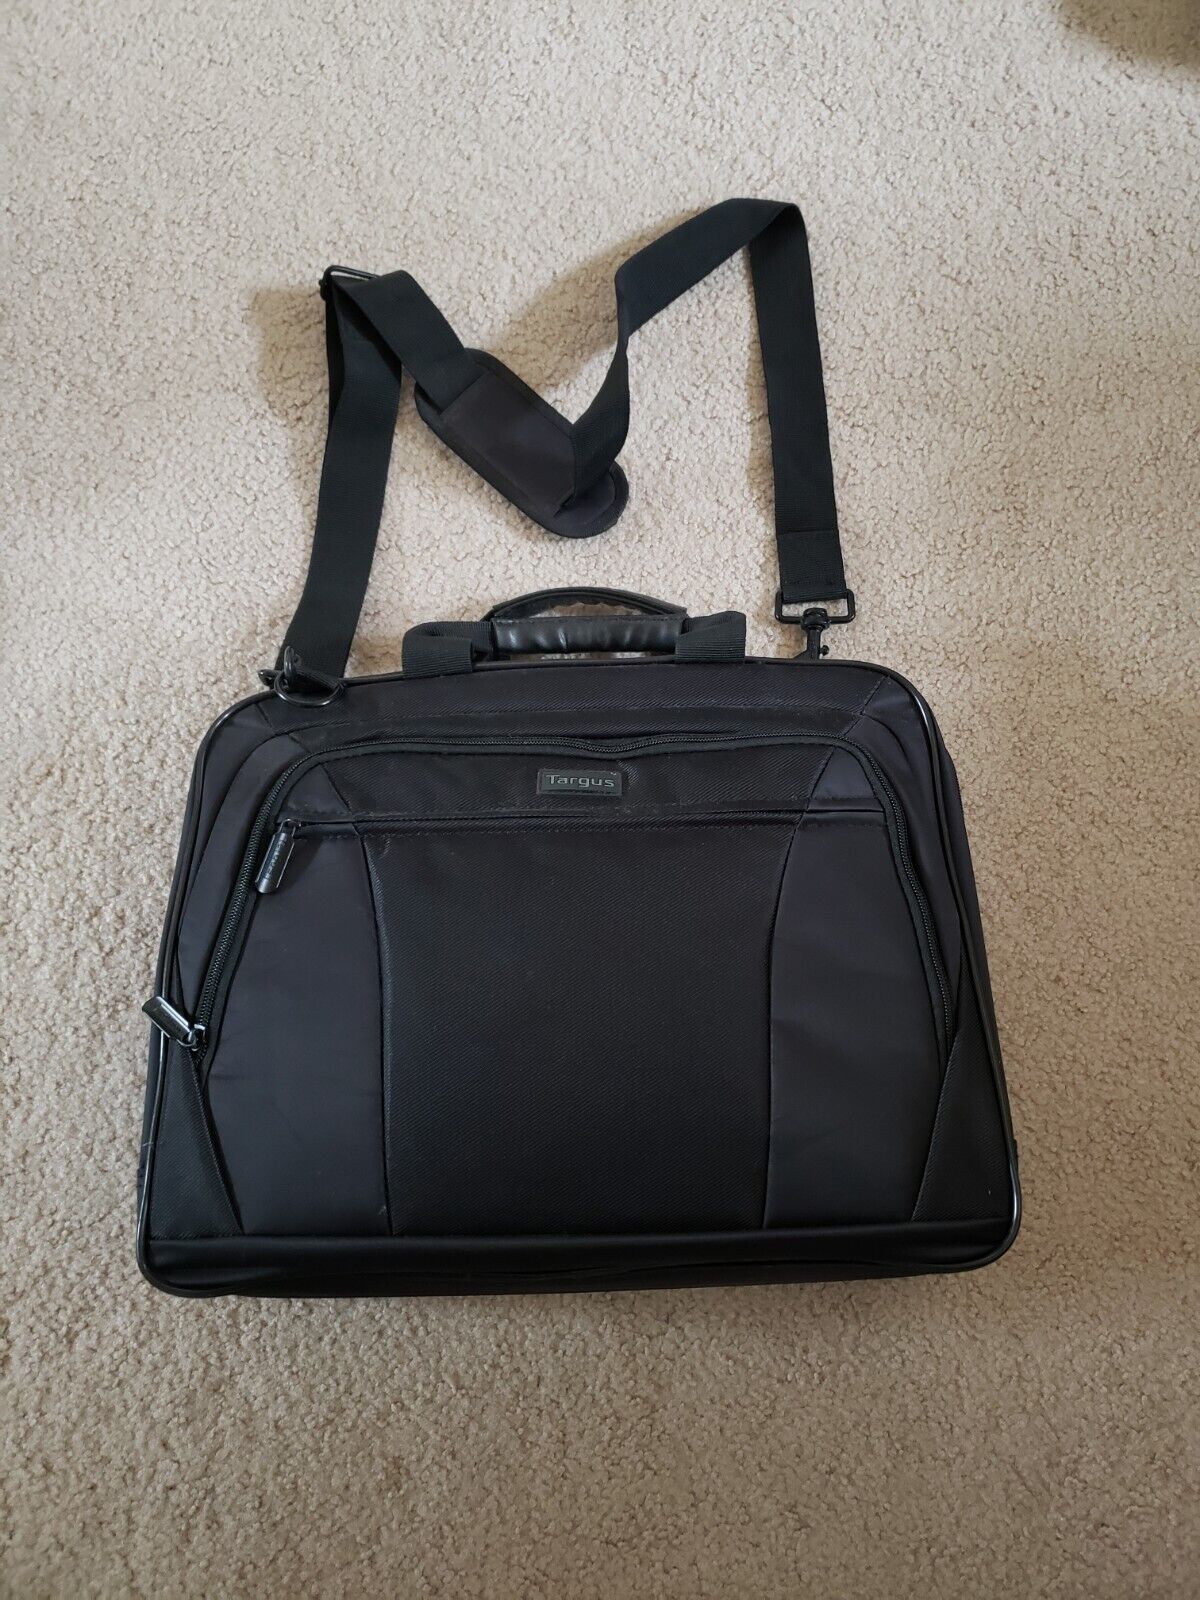 Targus Large Laptop Messenger Bag with Shoulder Strap 17 inch